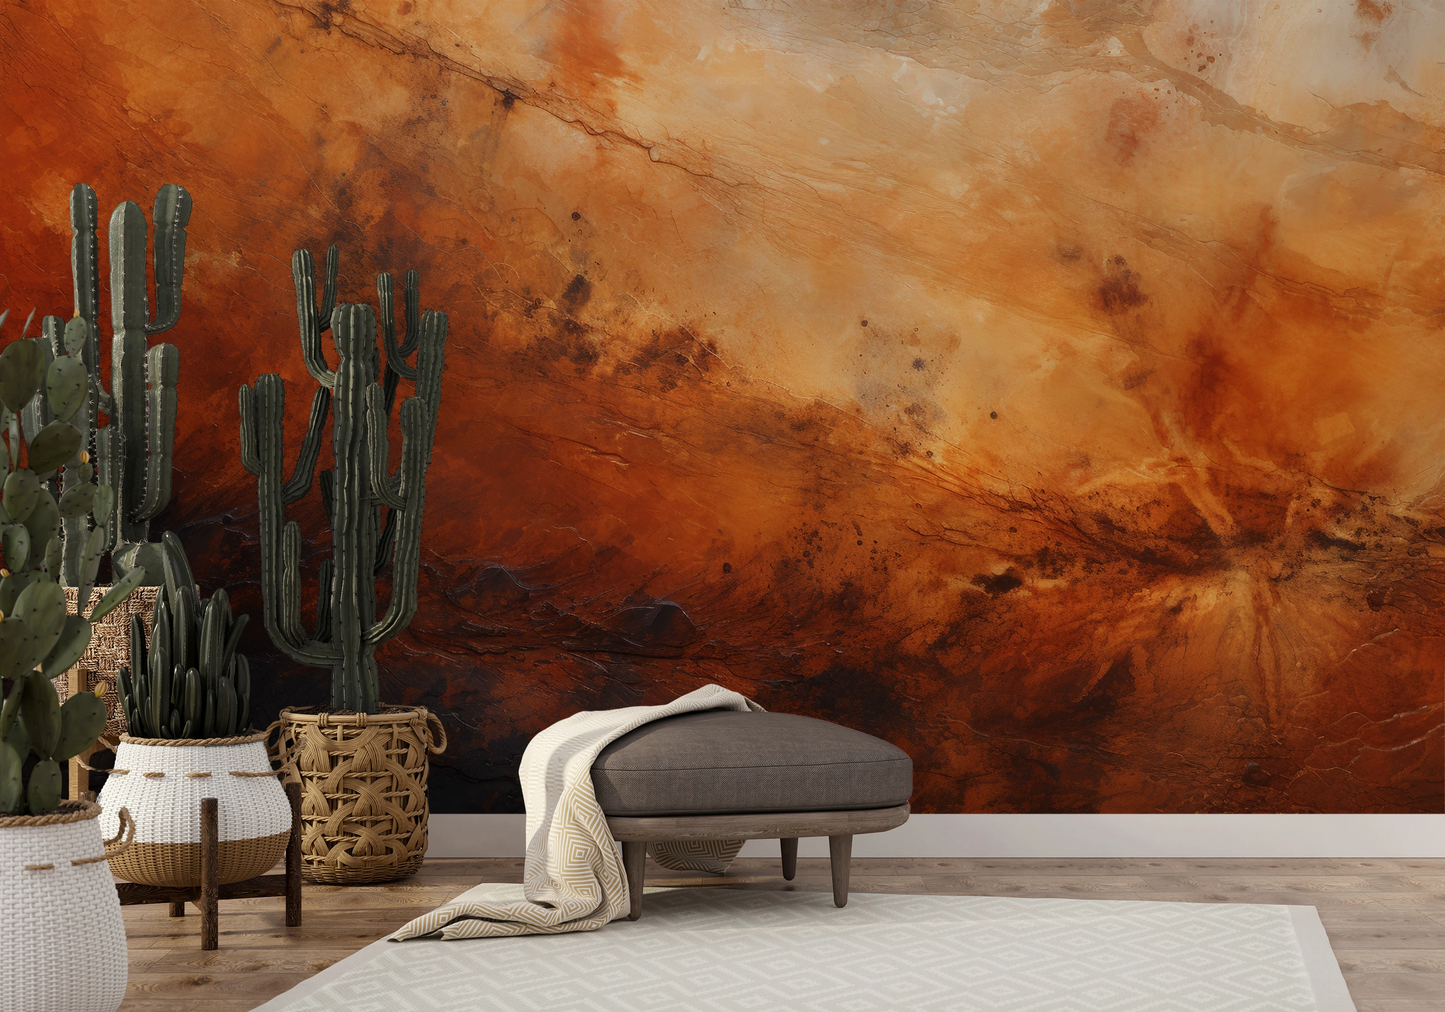 Fototapeta malowana o nazwie Martian Winds pokazana w aranżacji wnętrza.